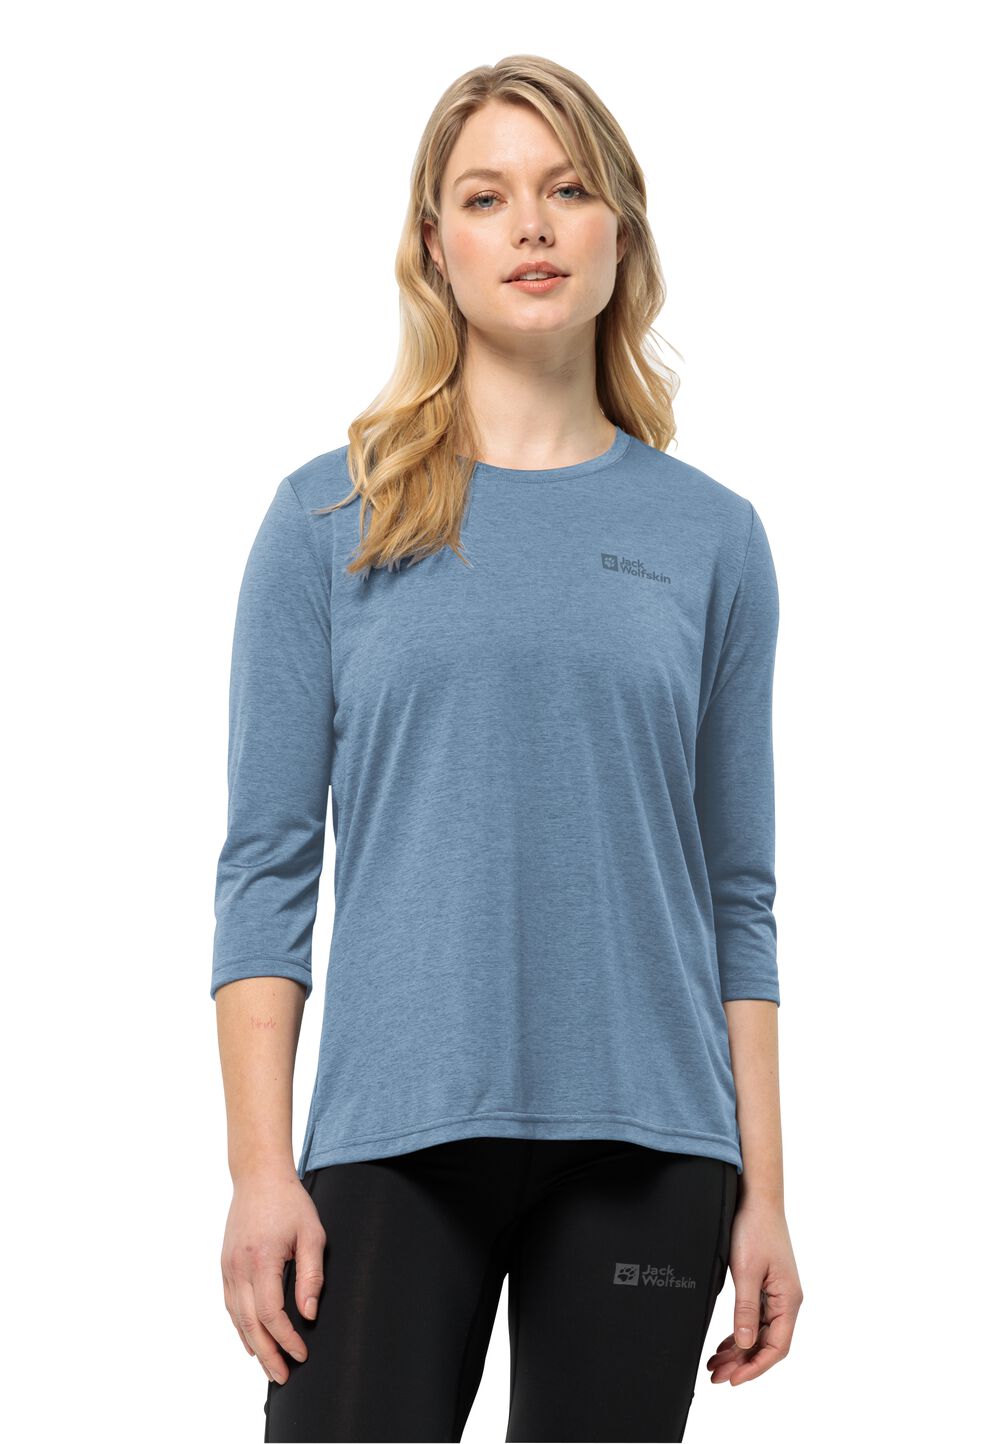 Jack Wolfskin Crosstrail 3 4 T-Shirt Women Functioneel shirt Dames S elemental blue elemental blue